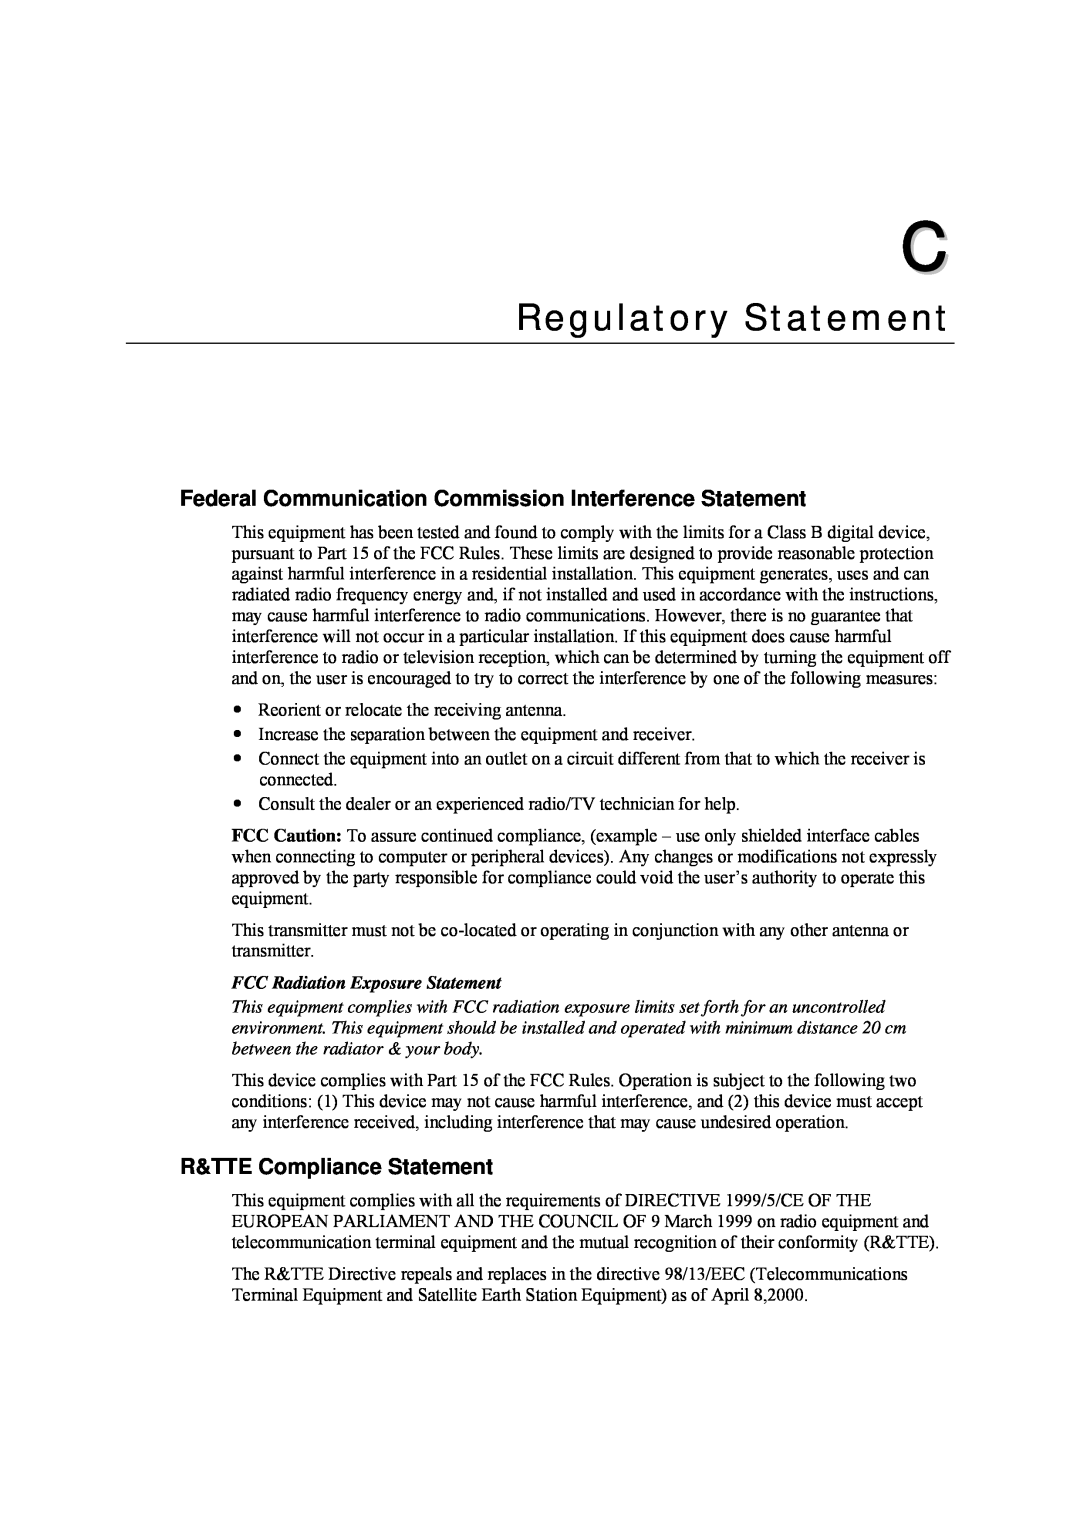 National Instruments WAP-3701, WAP-3711 Regulatory Statement, Federal Communication Commission Interference Statement 